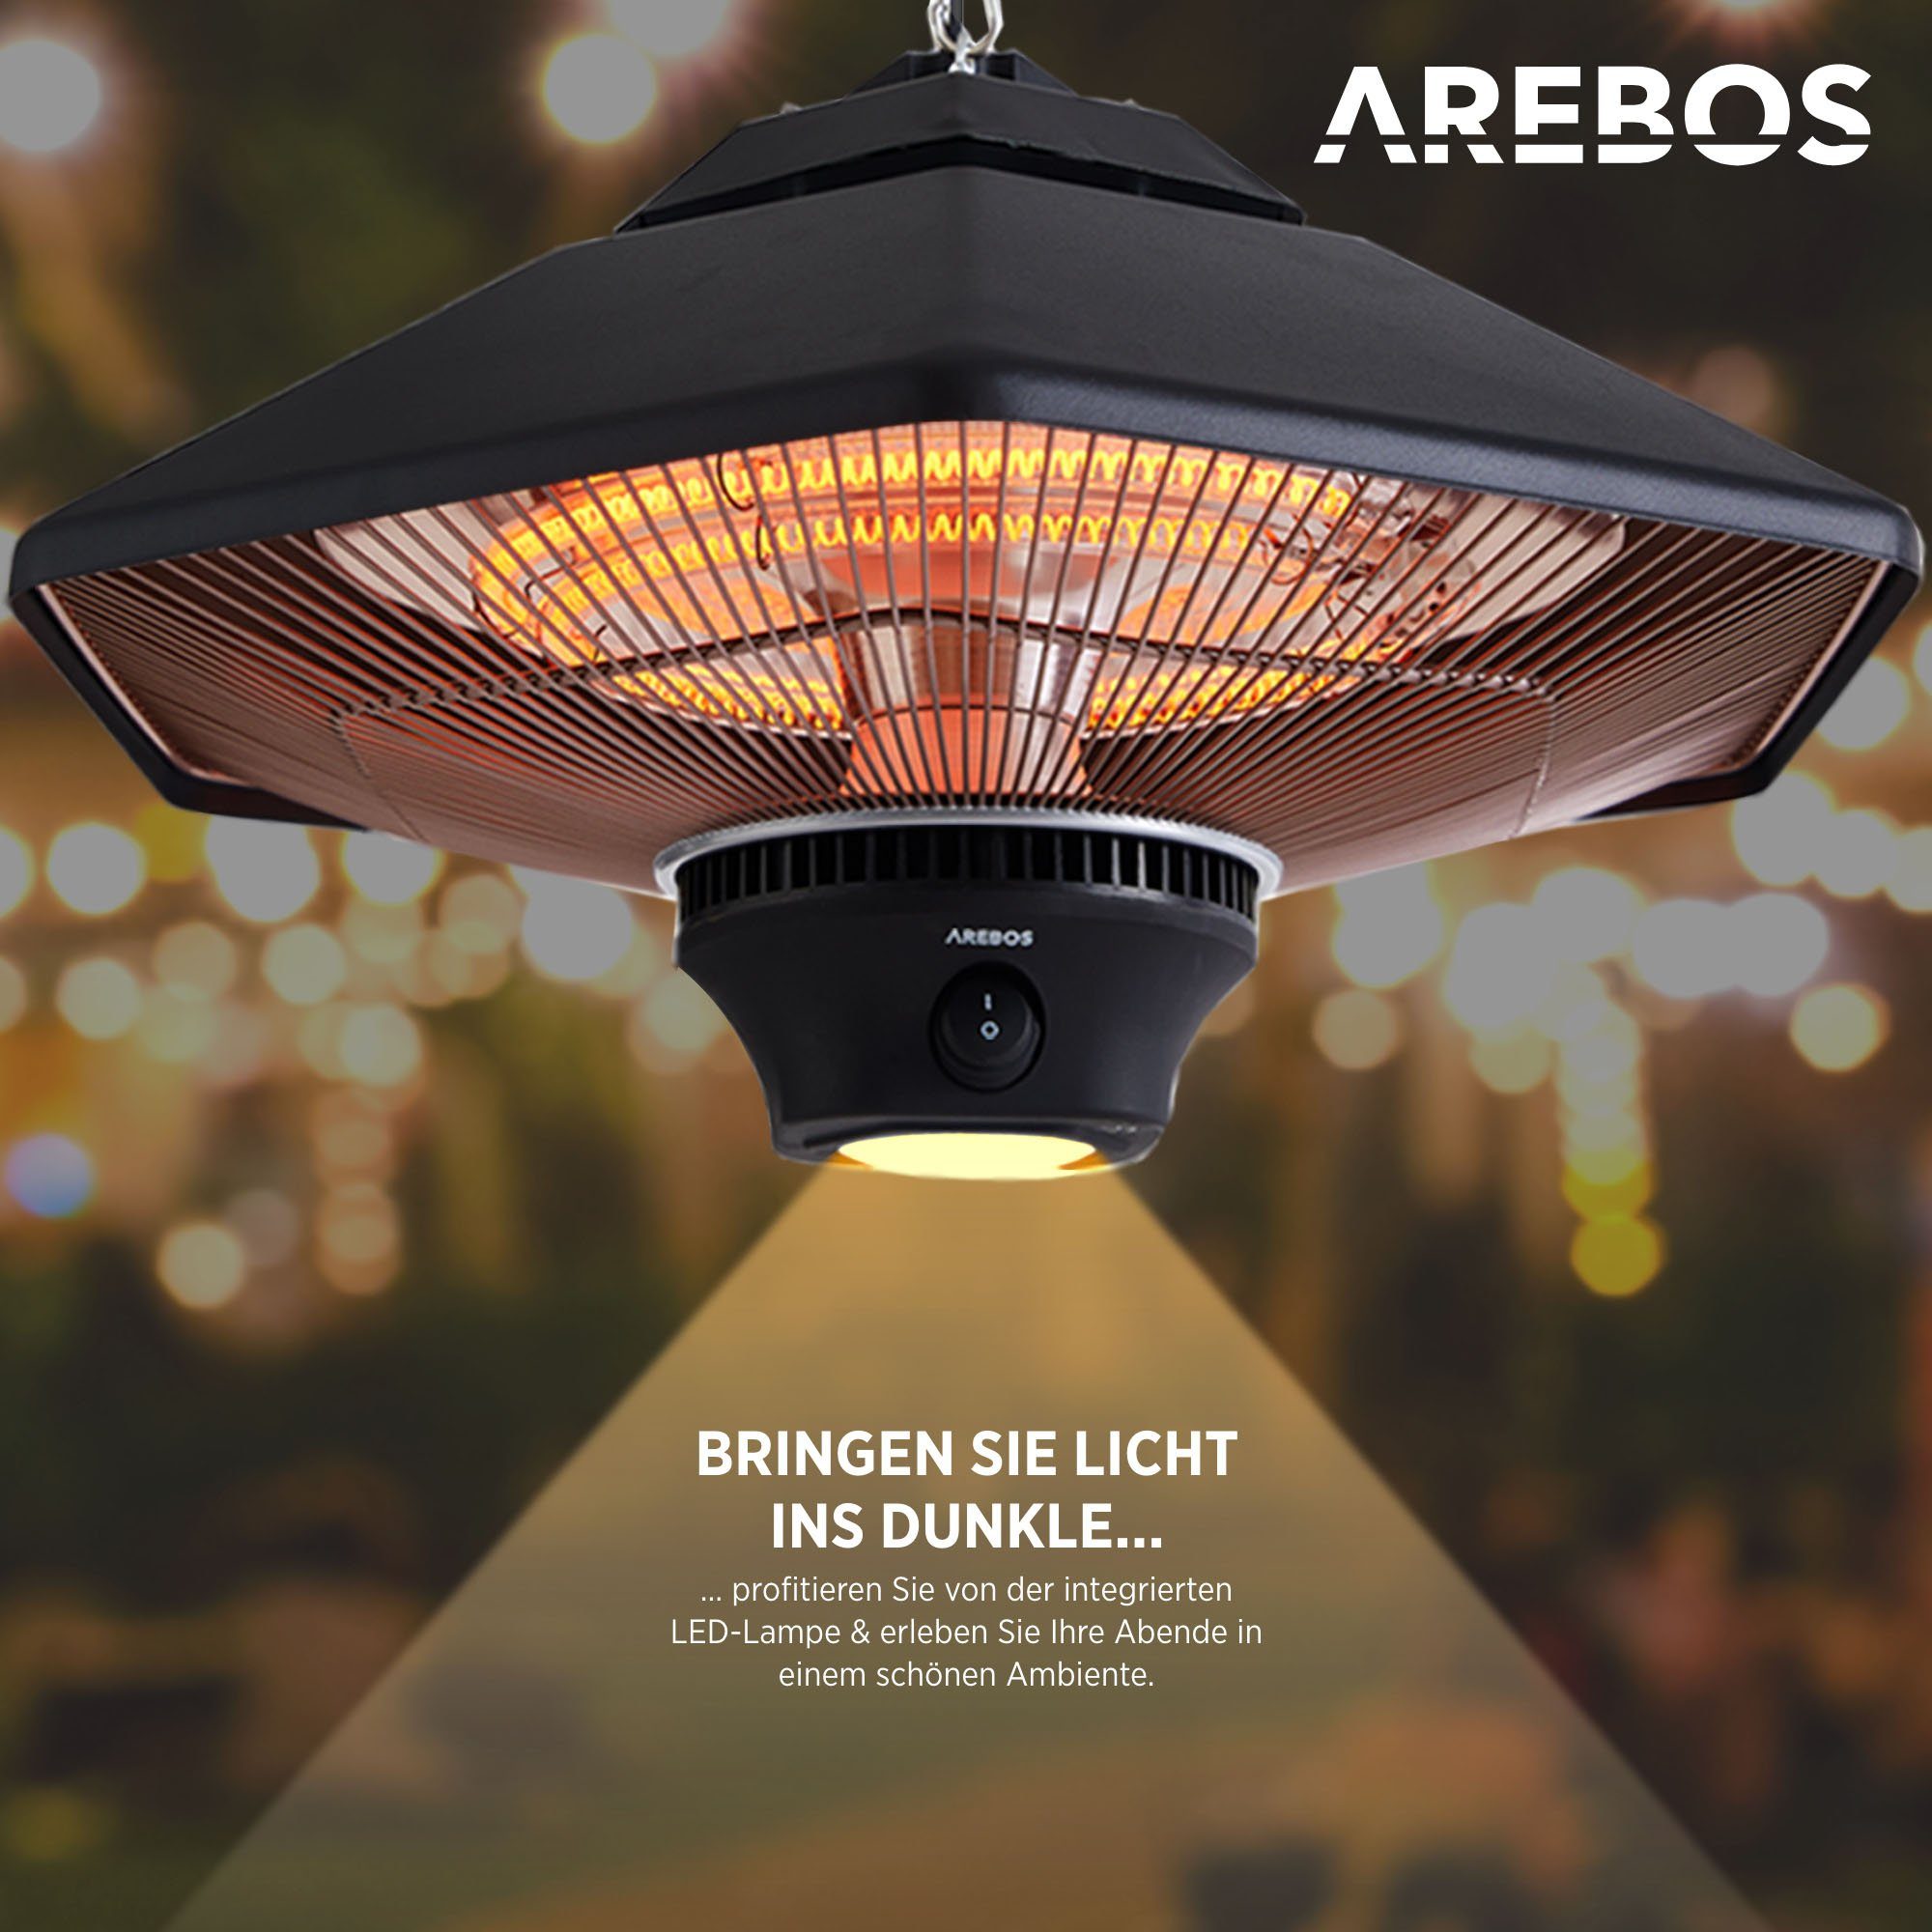 Arebos Terrassenstrahler Deckenheizstrahler Fernbedienung, W Heizstufen, + zuschaltbare 3 2000 Beleuchtung, LED 2 Halogenlampen